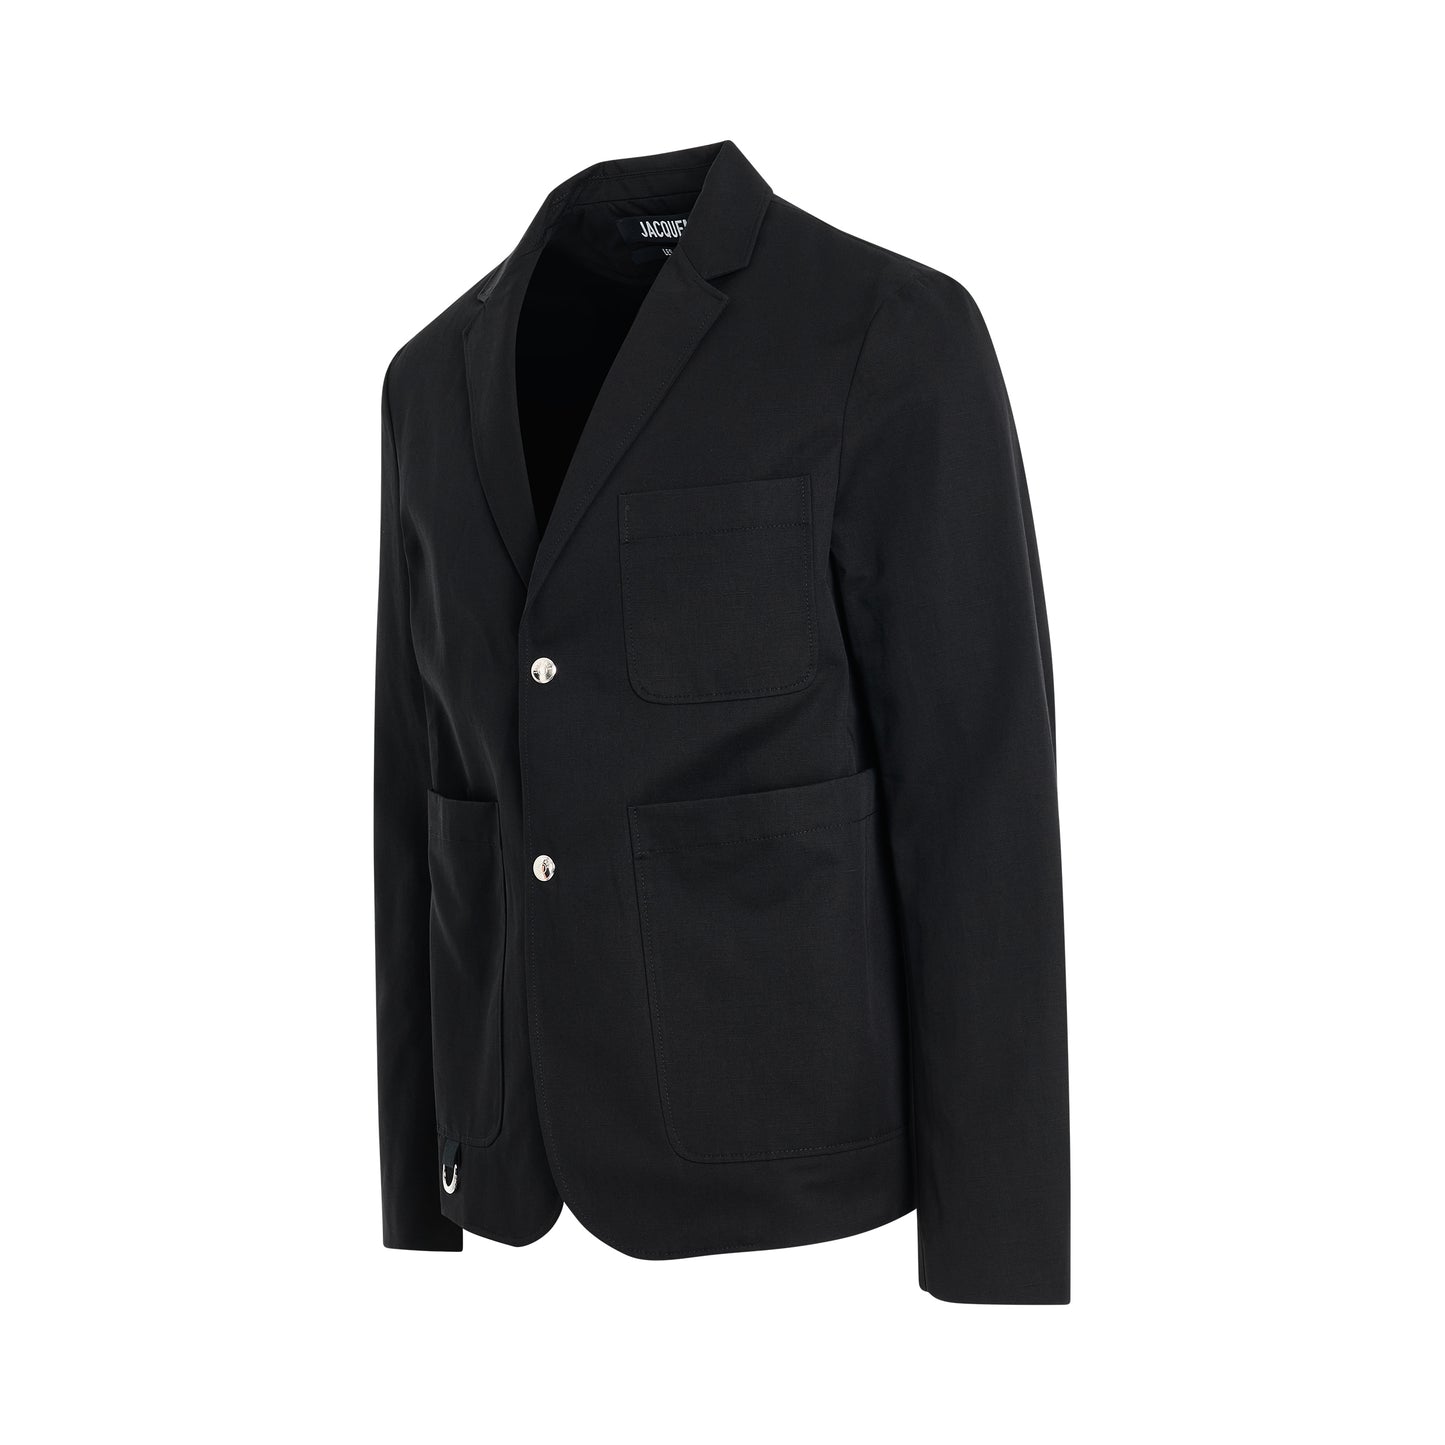 Jean Suit Jacket in Black